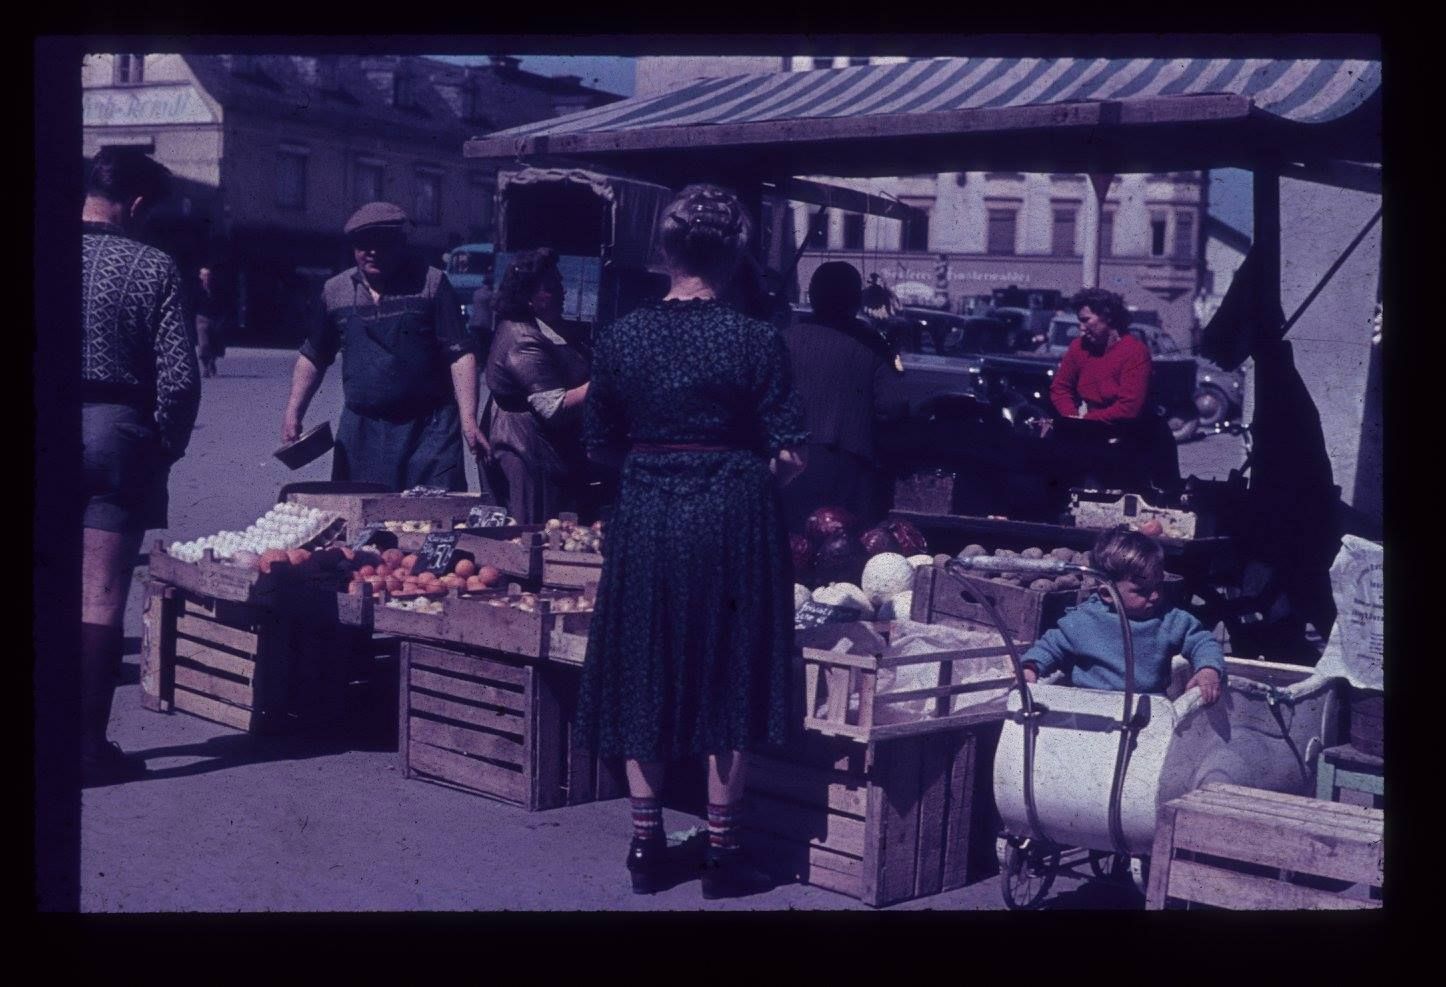 historische Farbaufnahme aus dem Jahr 1952, zeigt Szene an Marktstand. Frau in damals typischer Kleidung kauft was ein, besonderer Hingucker ist der weiße Kinderwagen der damaligen Zeit daneben mit einem sitzenden Buben mit blauem Oberteil